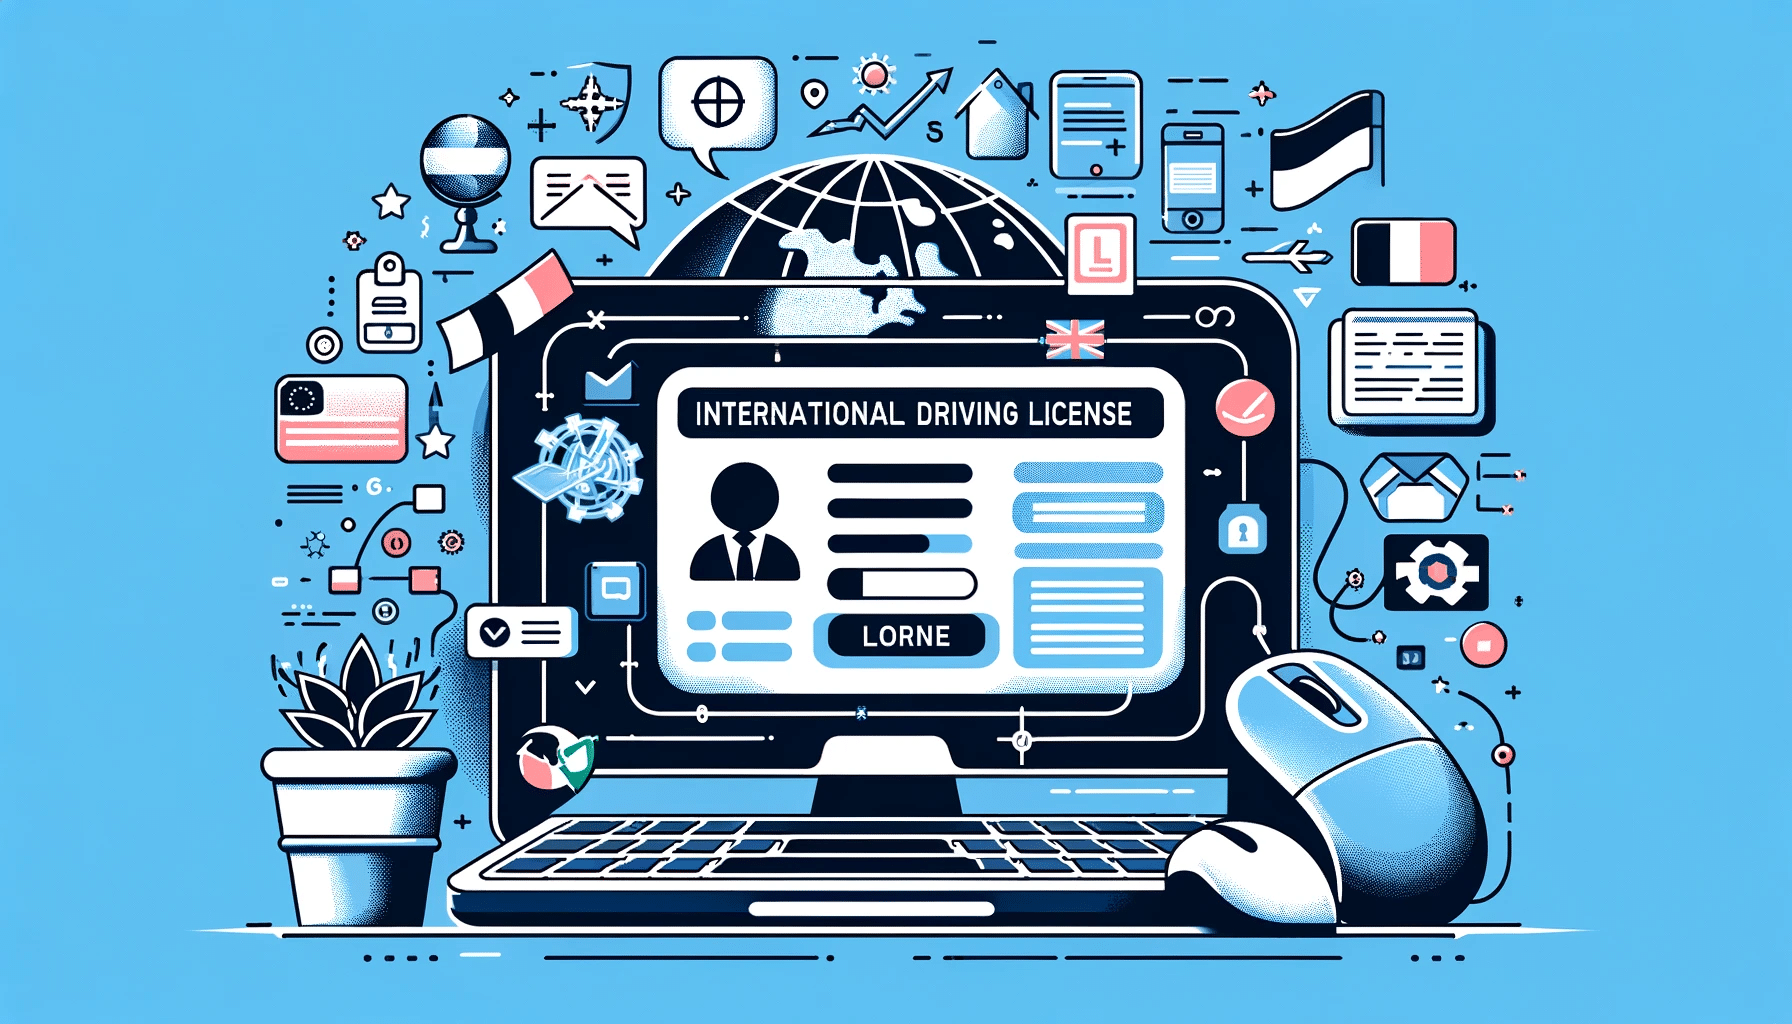 Computadora mostrando el proceso de solicitud de licencia de conducir internacional en línea, con iconos de internet y un globo que representa la accesibilidad global.